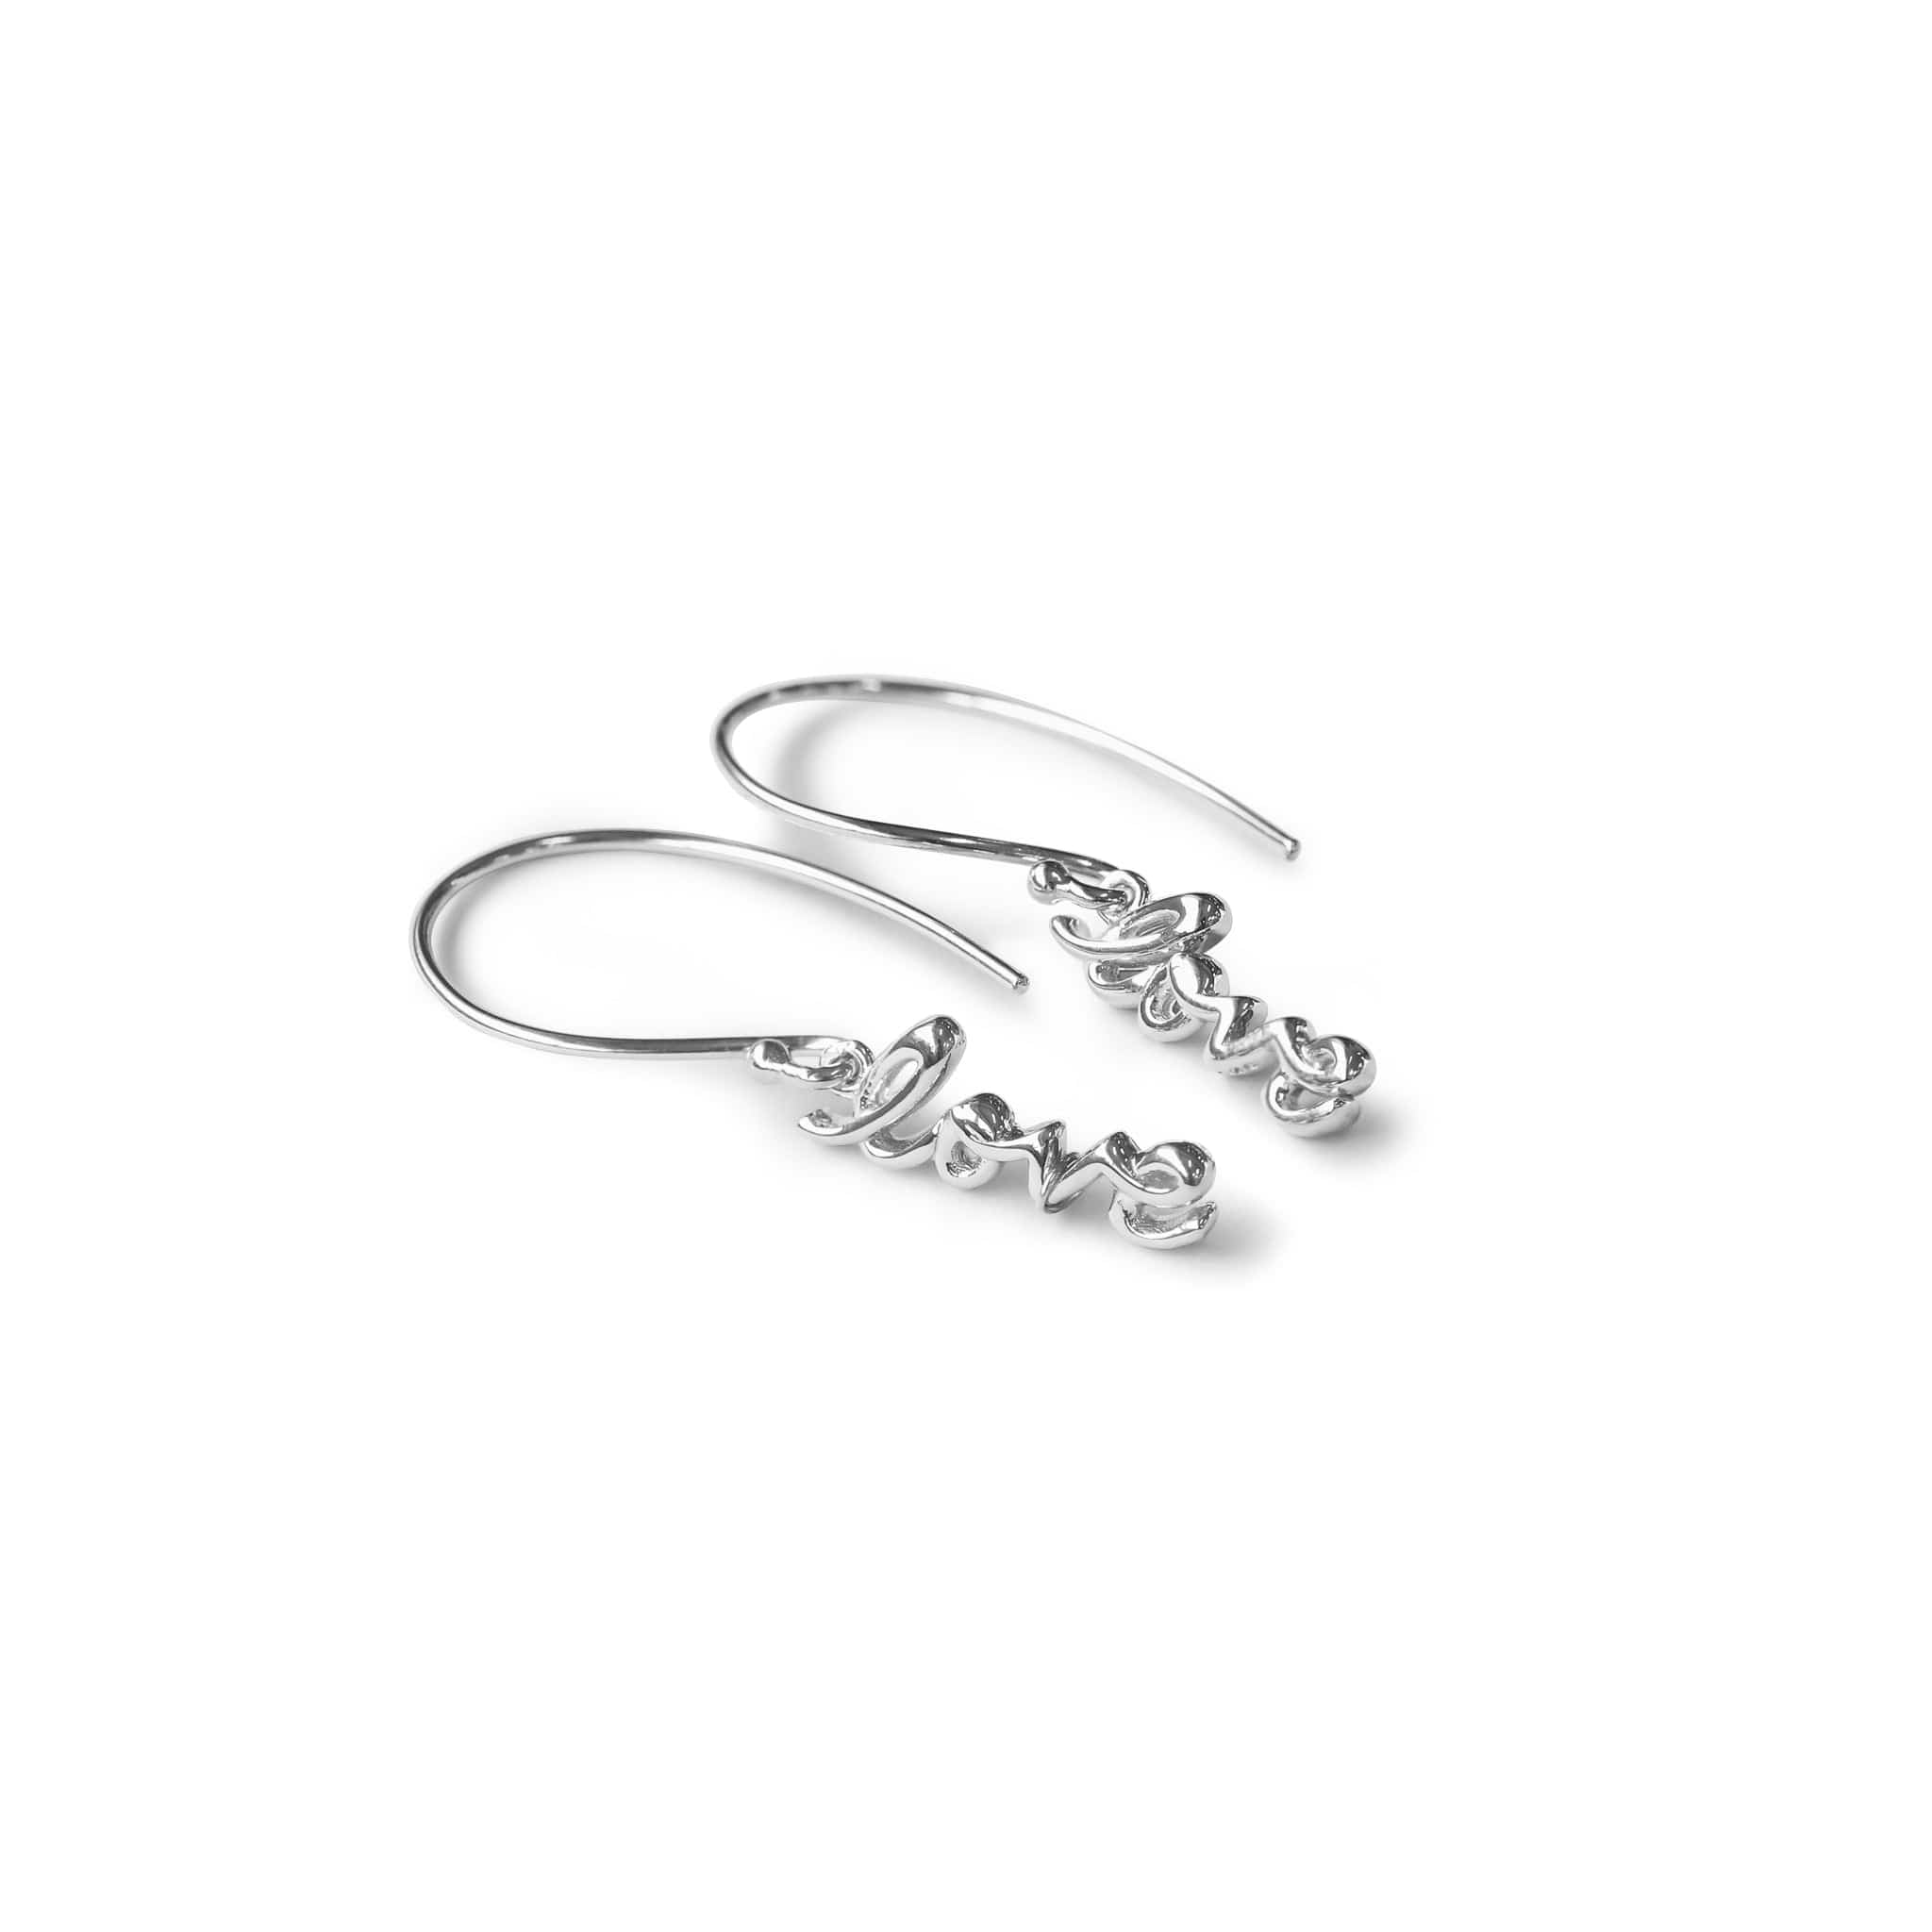 Boma Jewelry Earrings Sterling Silver Scripted Love Dangles Earrings